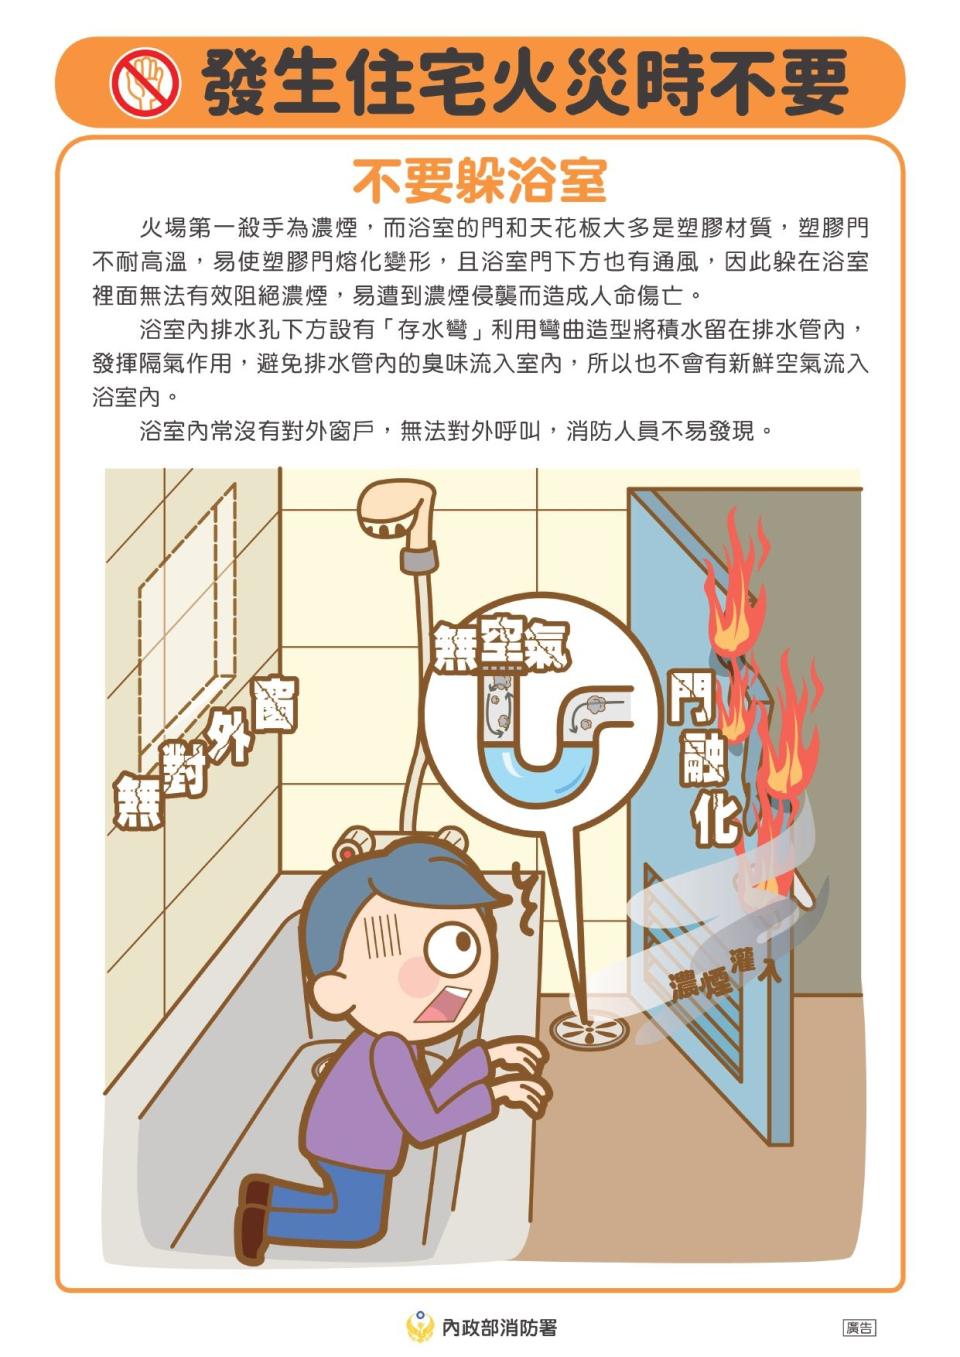 消防署提醒火災千萬別躲浴室。（翻攝自消防署臉書粉專）